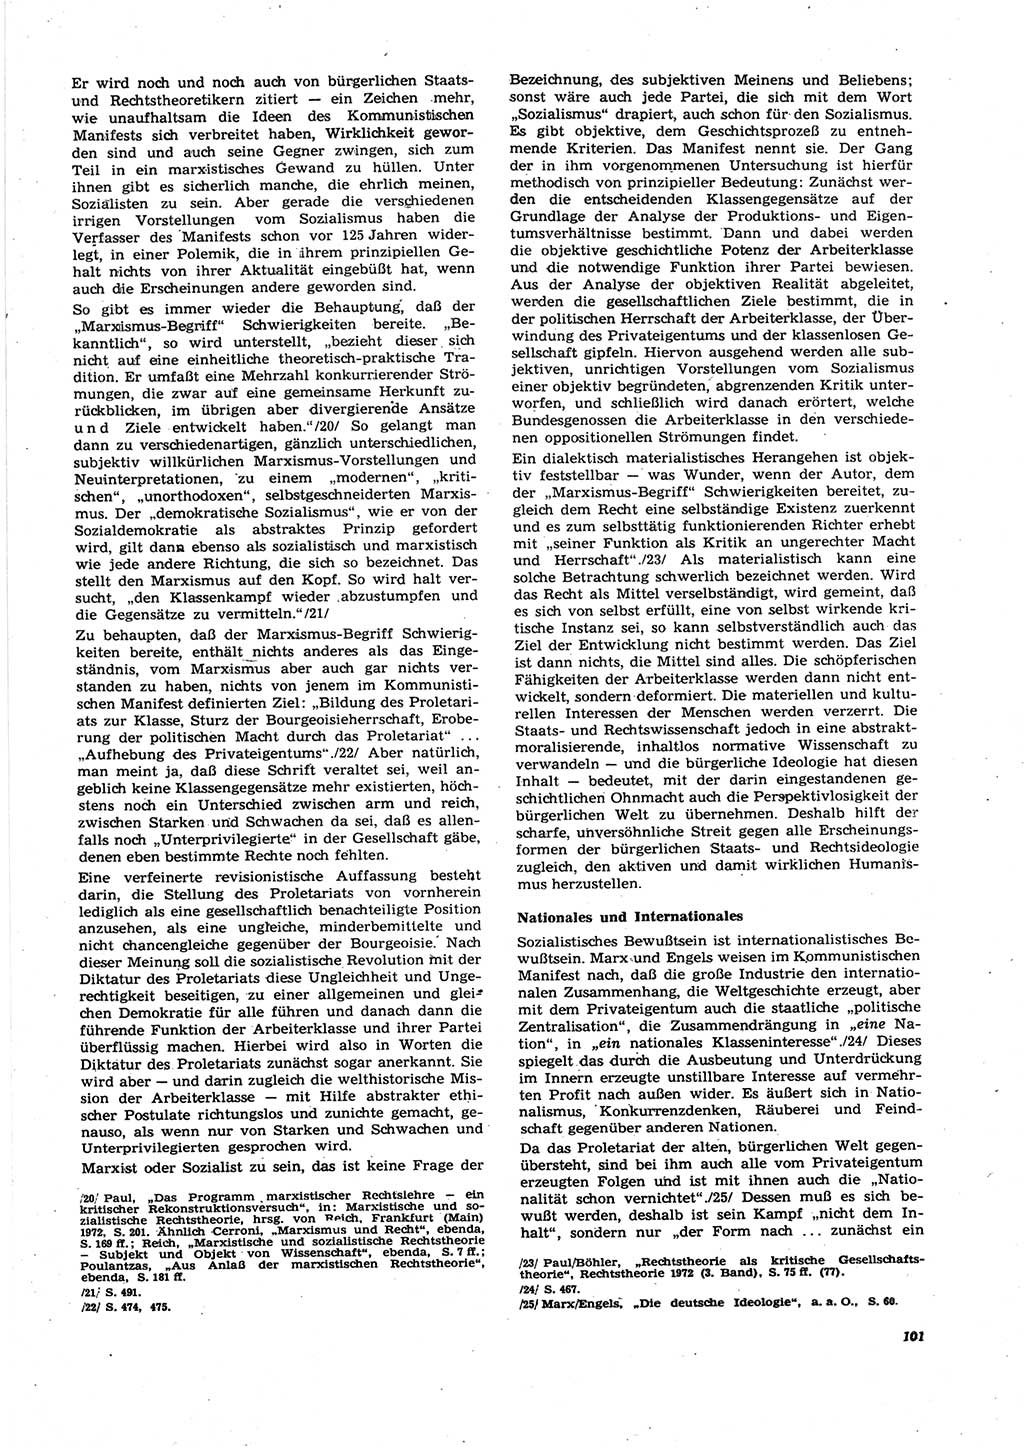 Neue Justiz (NJ), Zeitschrift für Recht und Rechtswissenschaft [Deutsche Demokratische Republik (DDR)], 27. Jahrgang 1973, Seite 101 (NJ DDR 1973, S. 101)